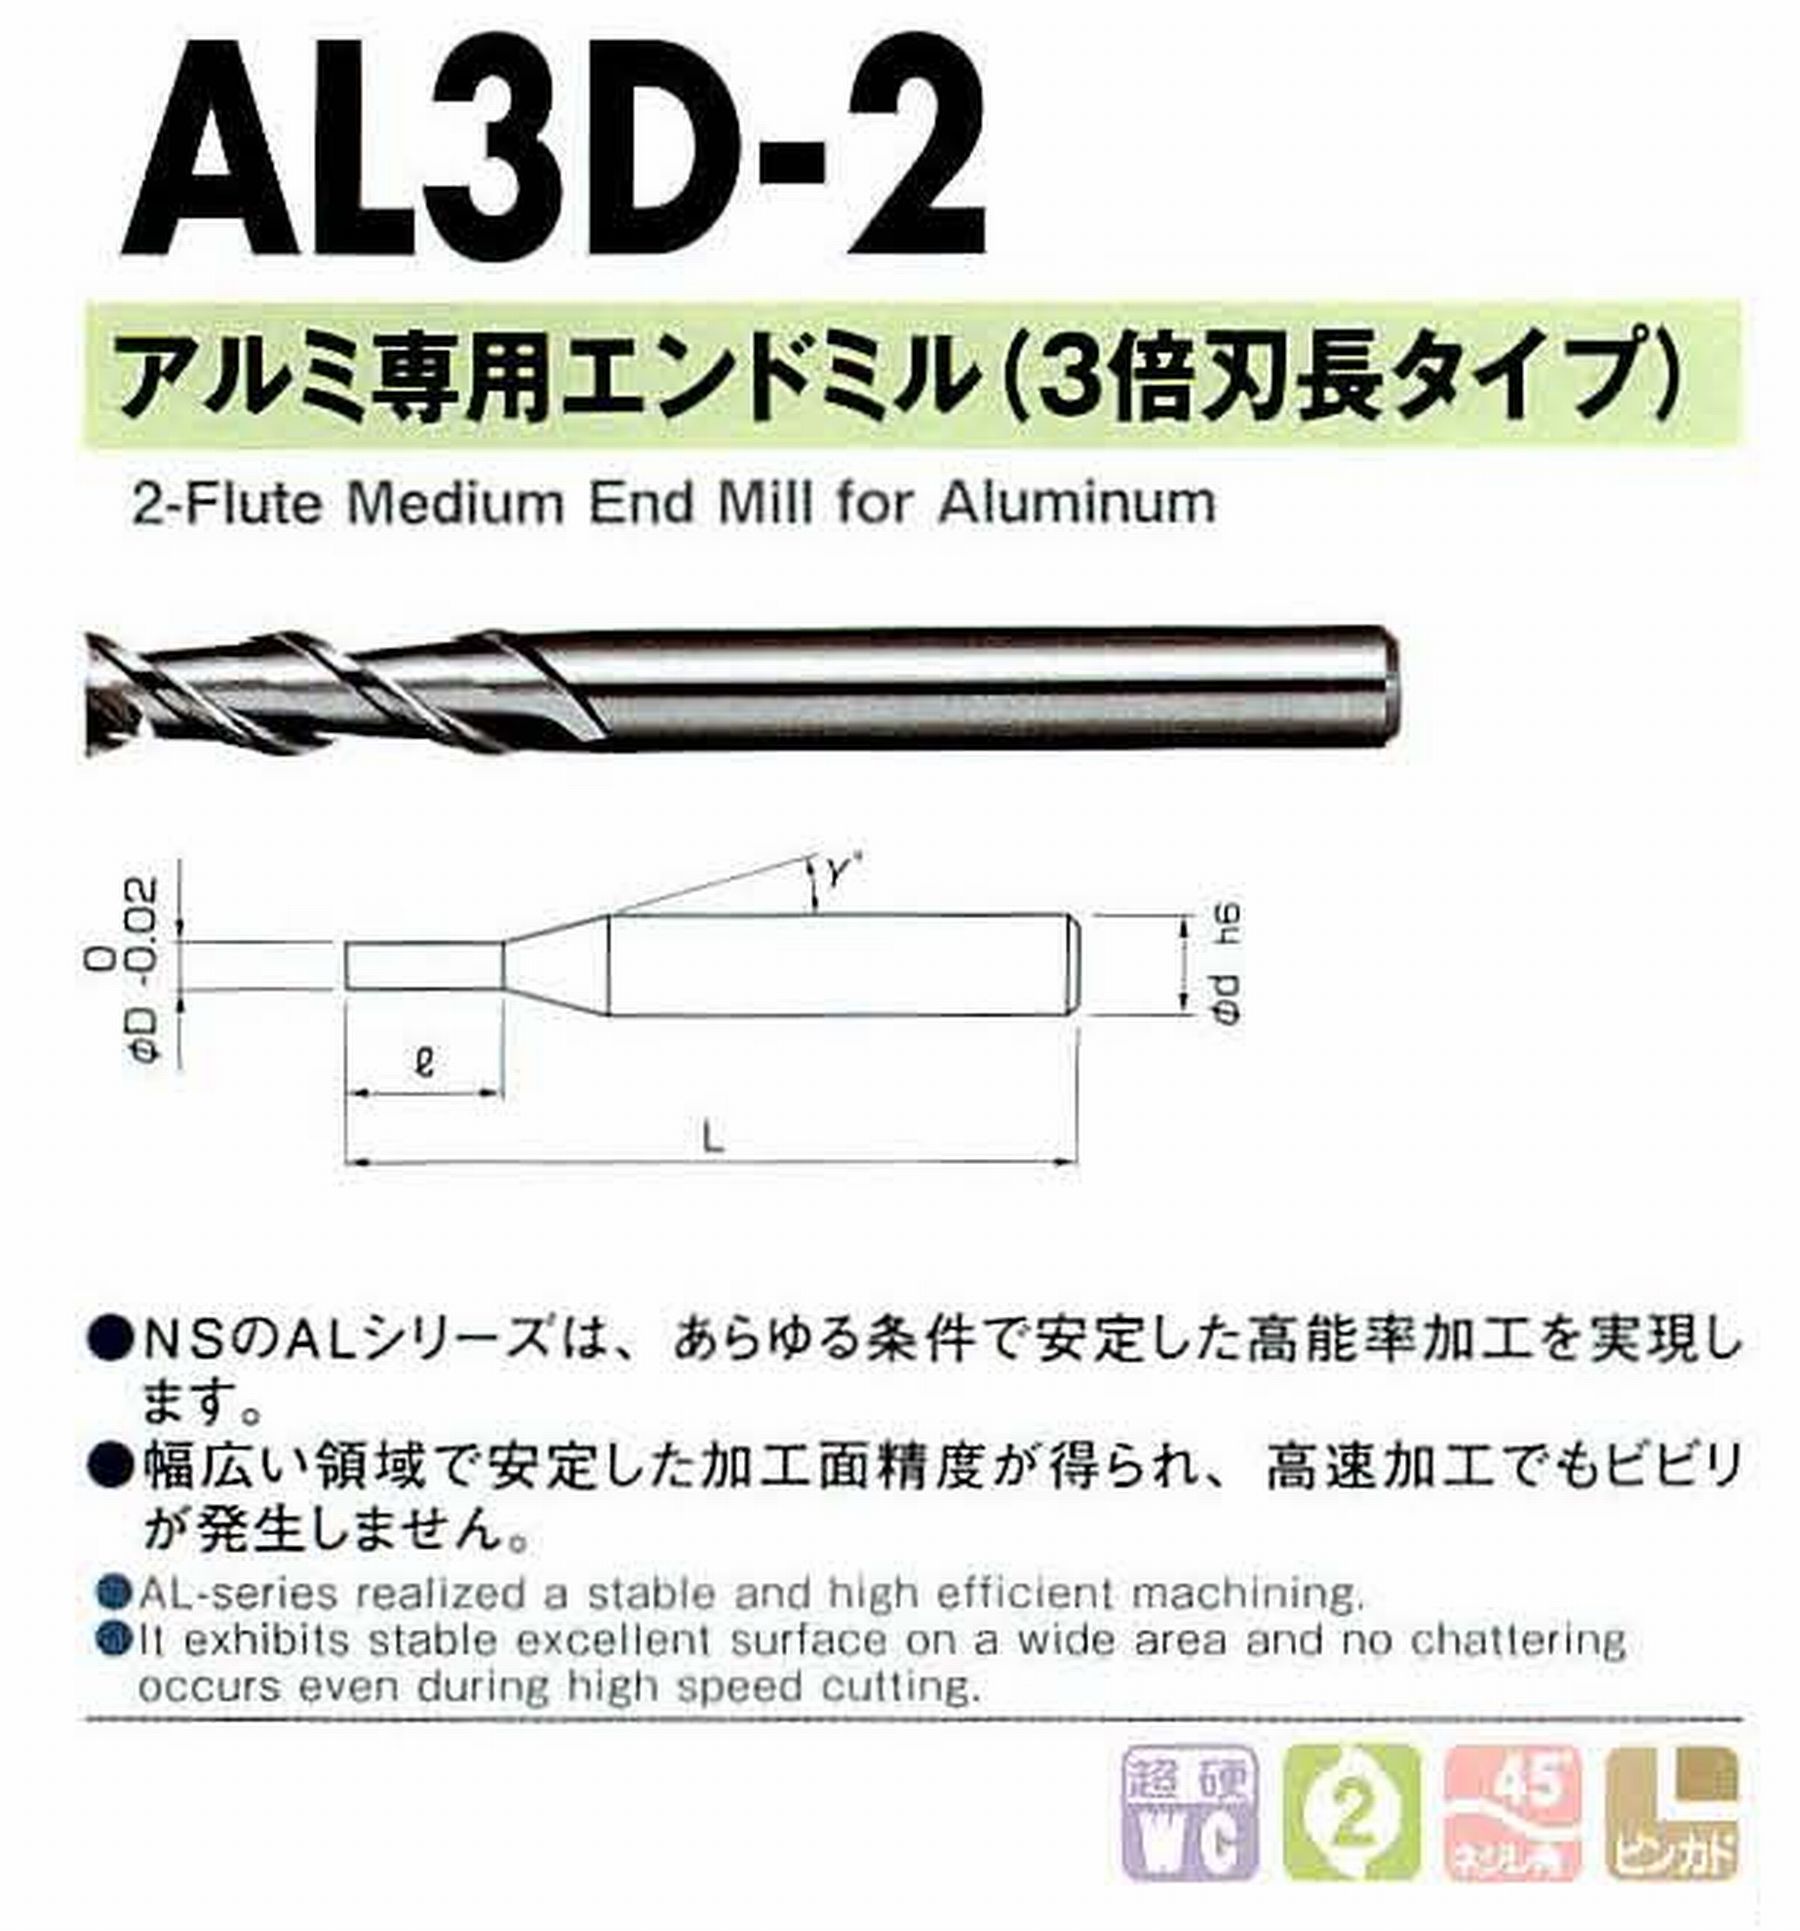 NS 日進工具 AL3D-2 アルミ専用エンドミル(3倍刃長タイプ) コードNO．01-00632-00700 刃径7 刃長21 首角9° シャンク径8mm 全長70